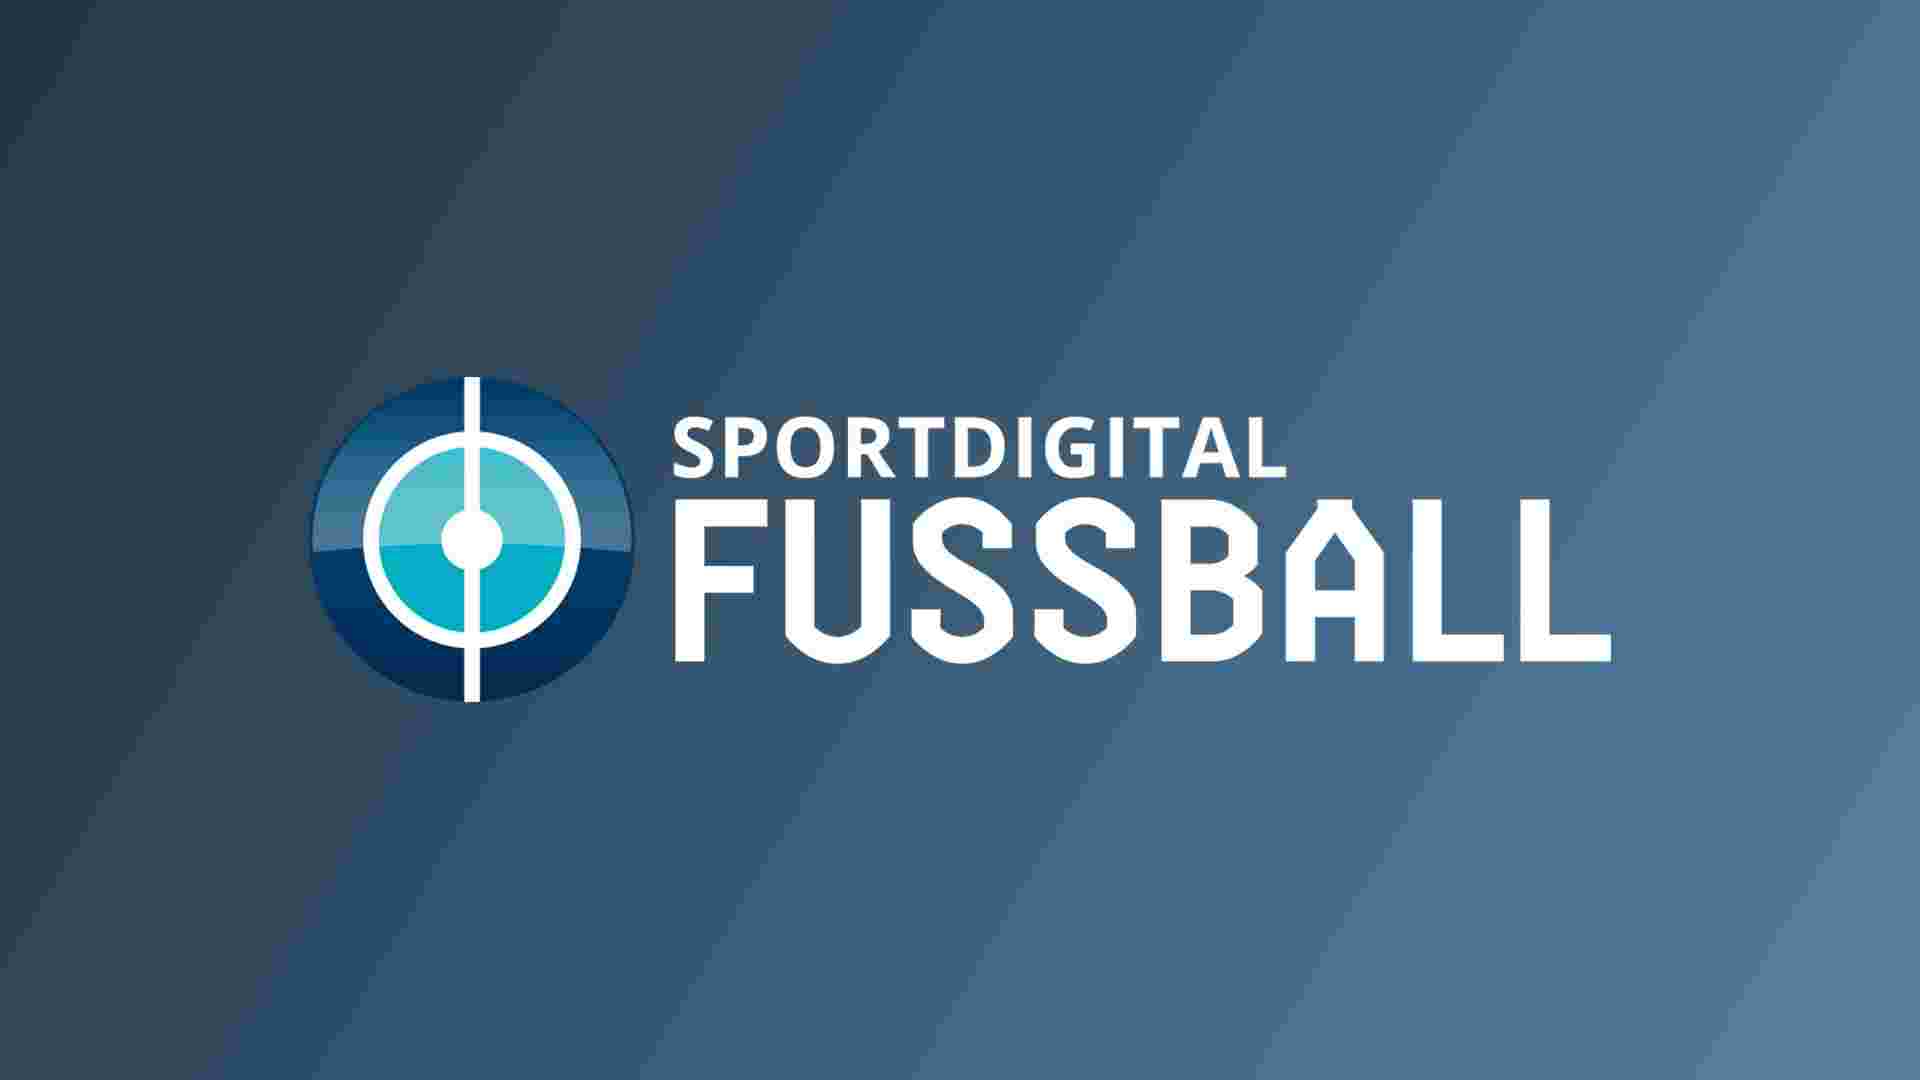 sportdigital fussball programm